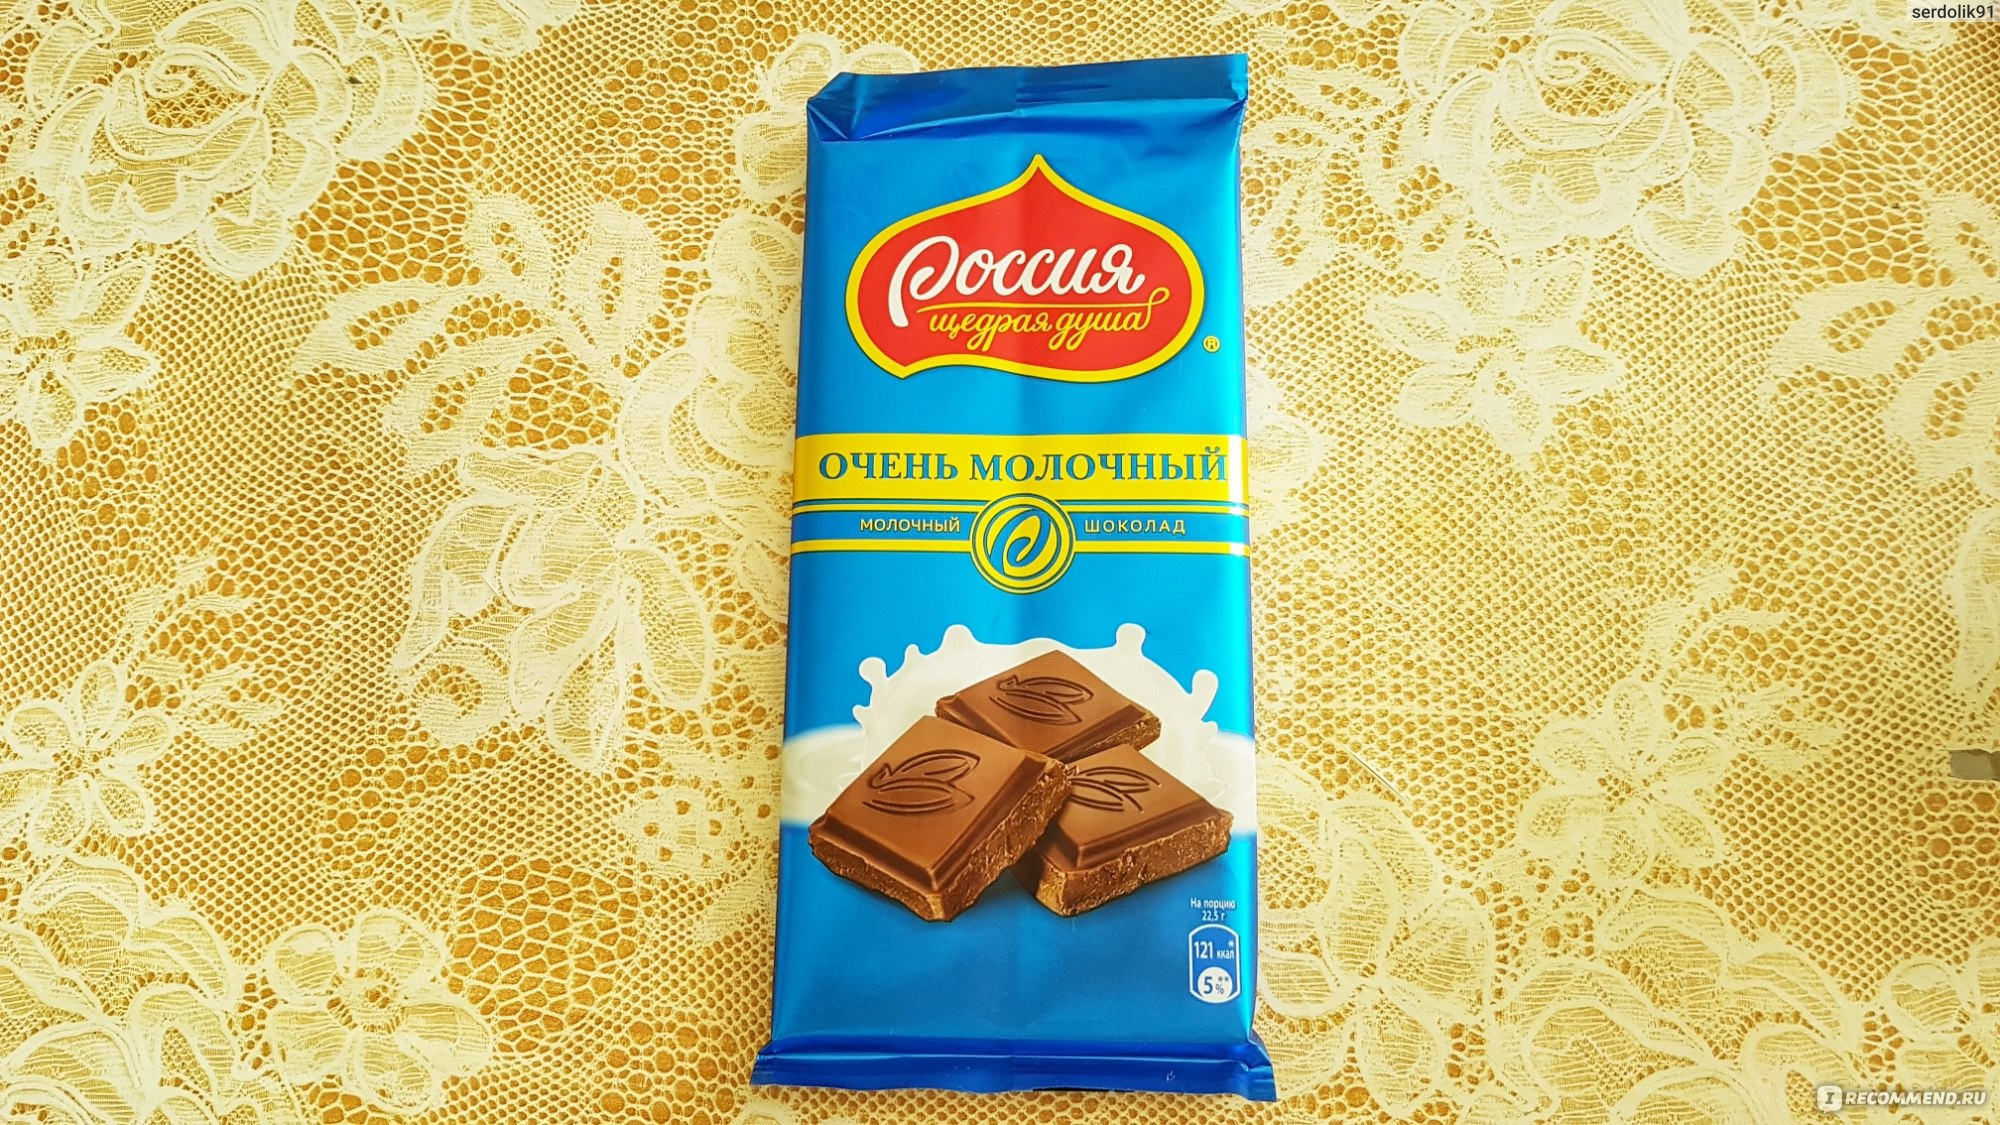 Шоколадки Россия Щедрая Душа